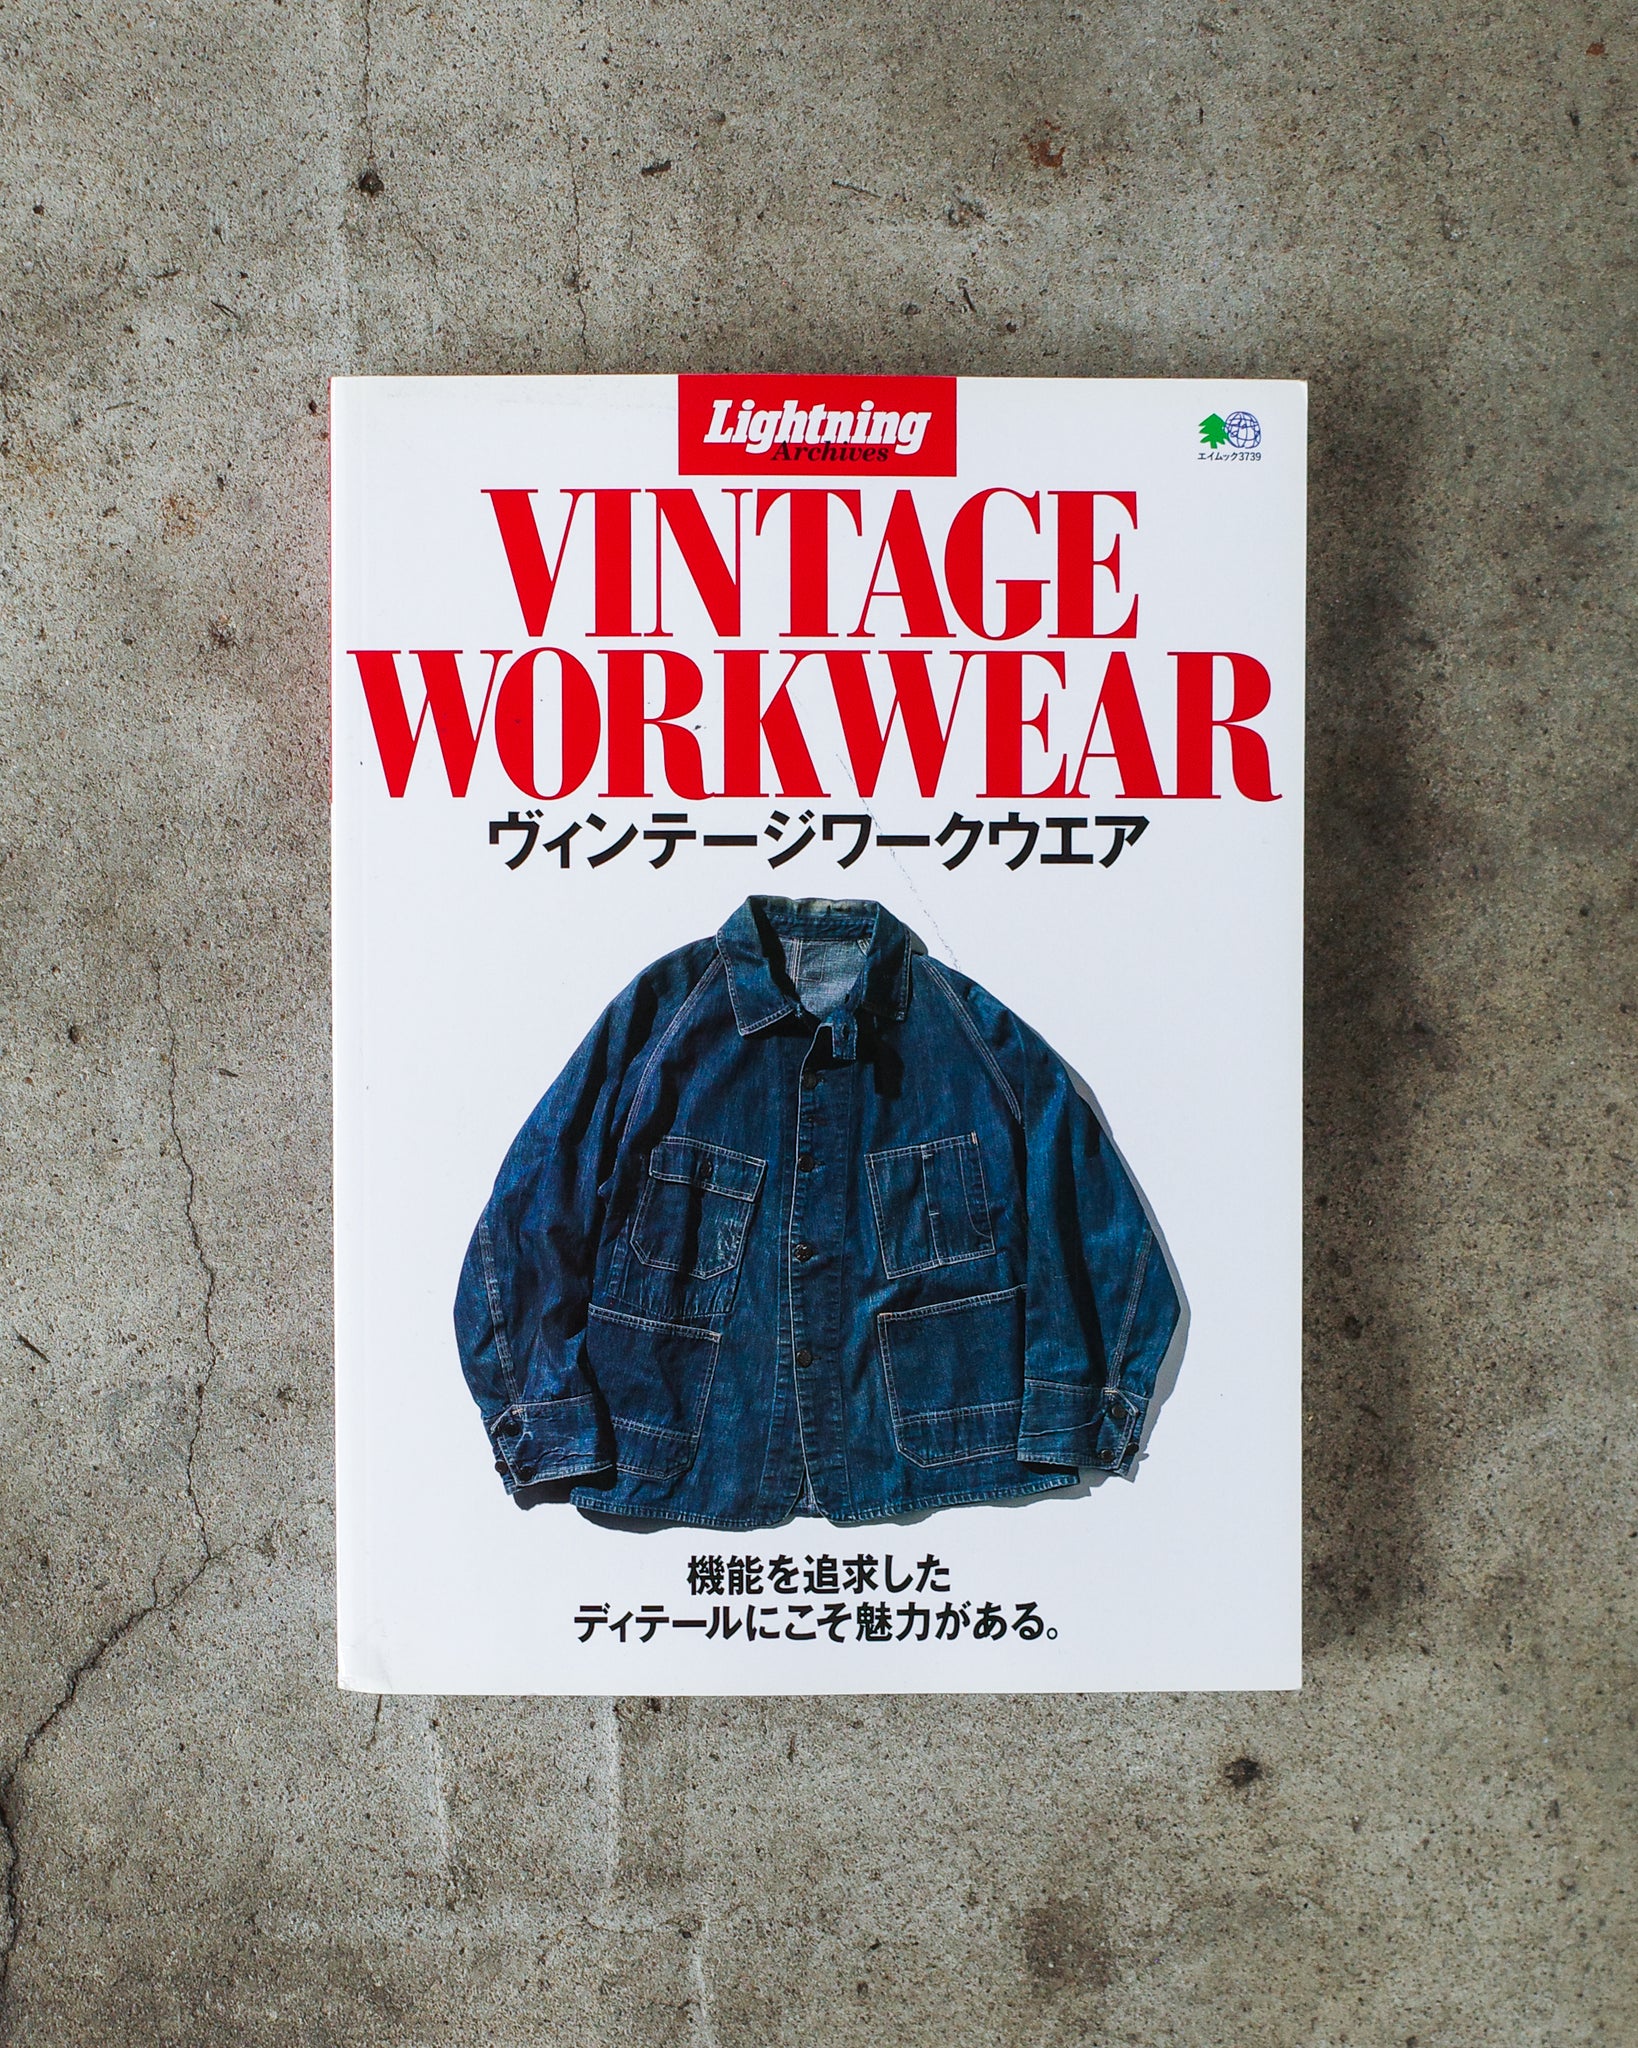 Lightning Archives "Vintage Workwear" Book